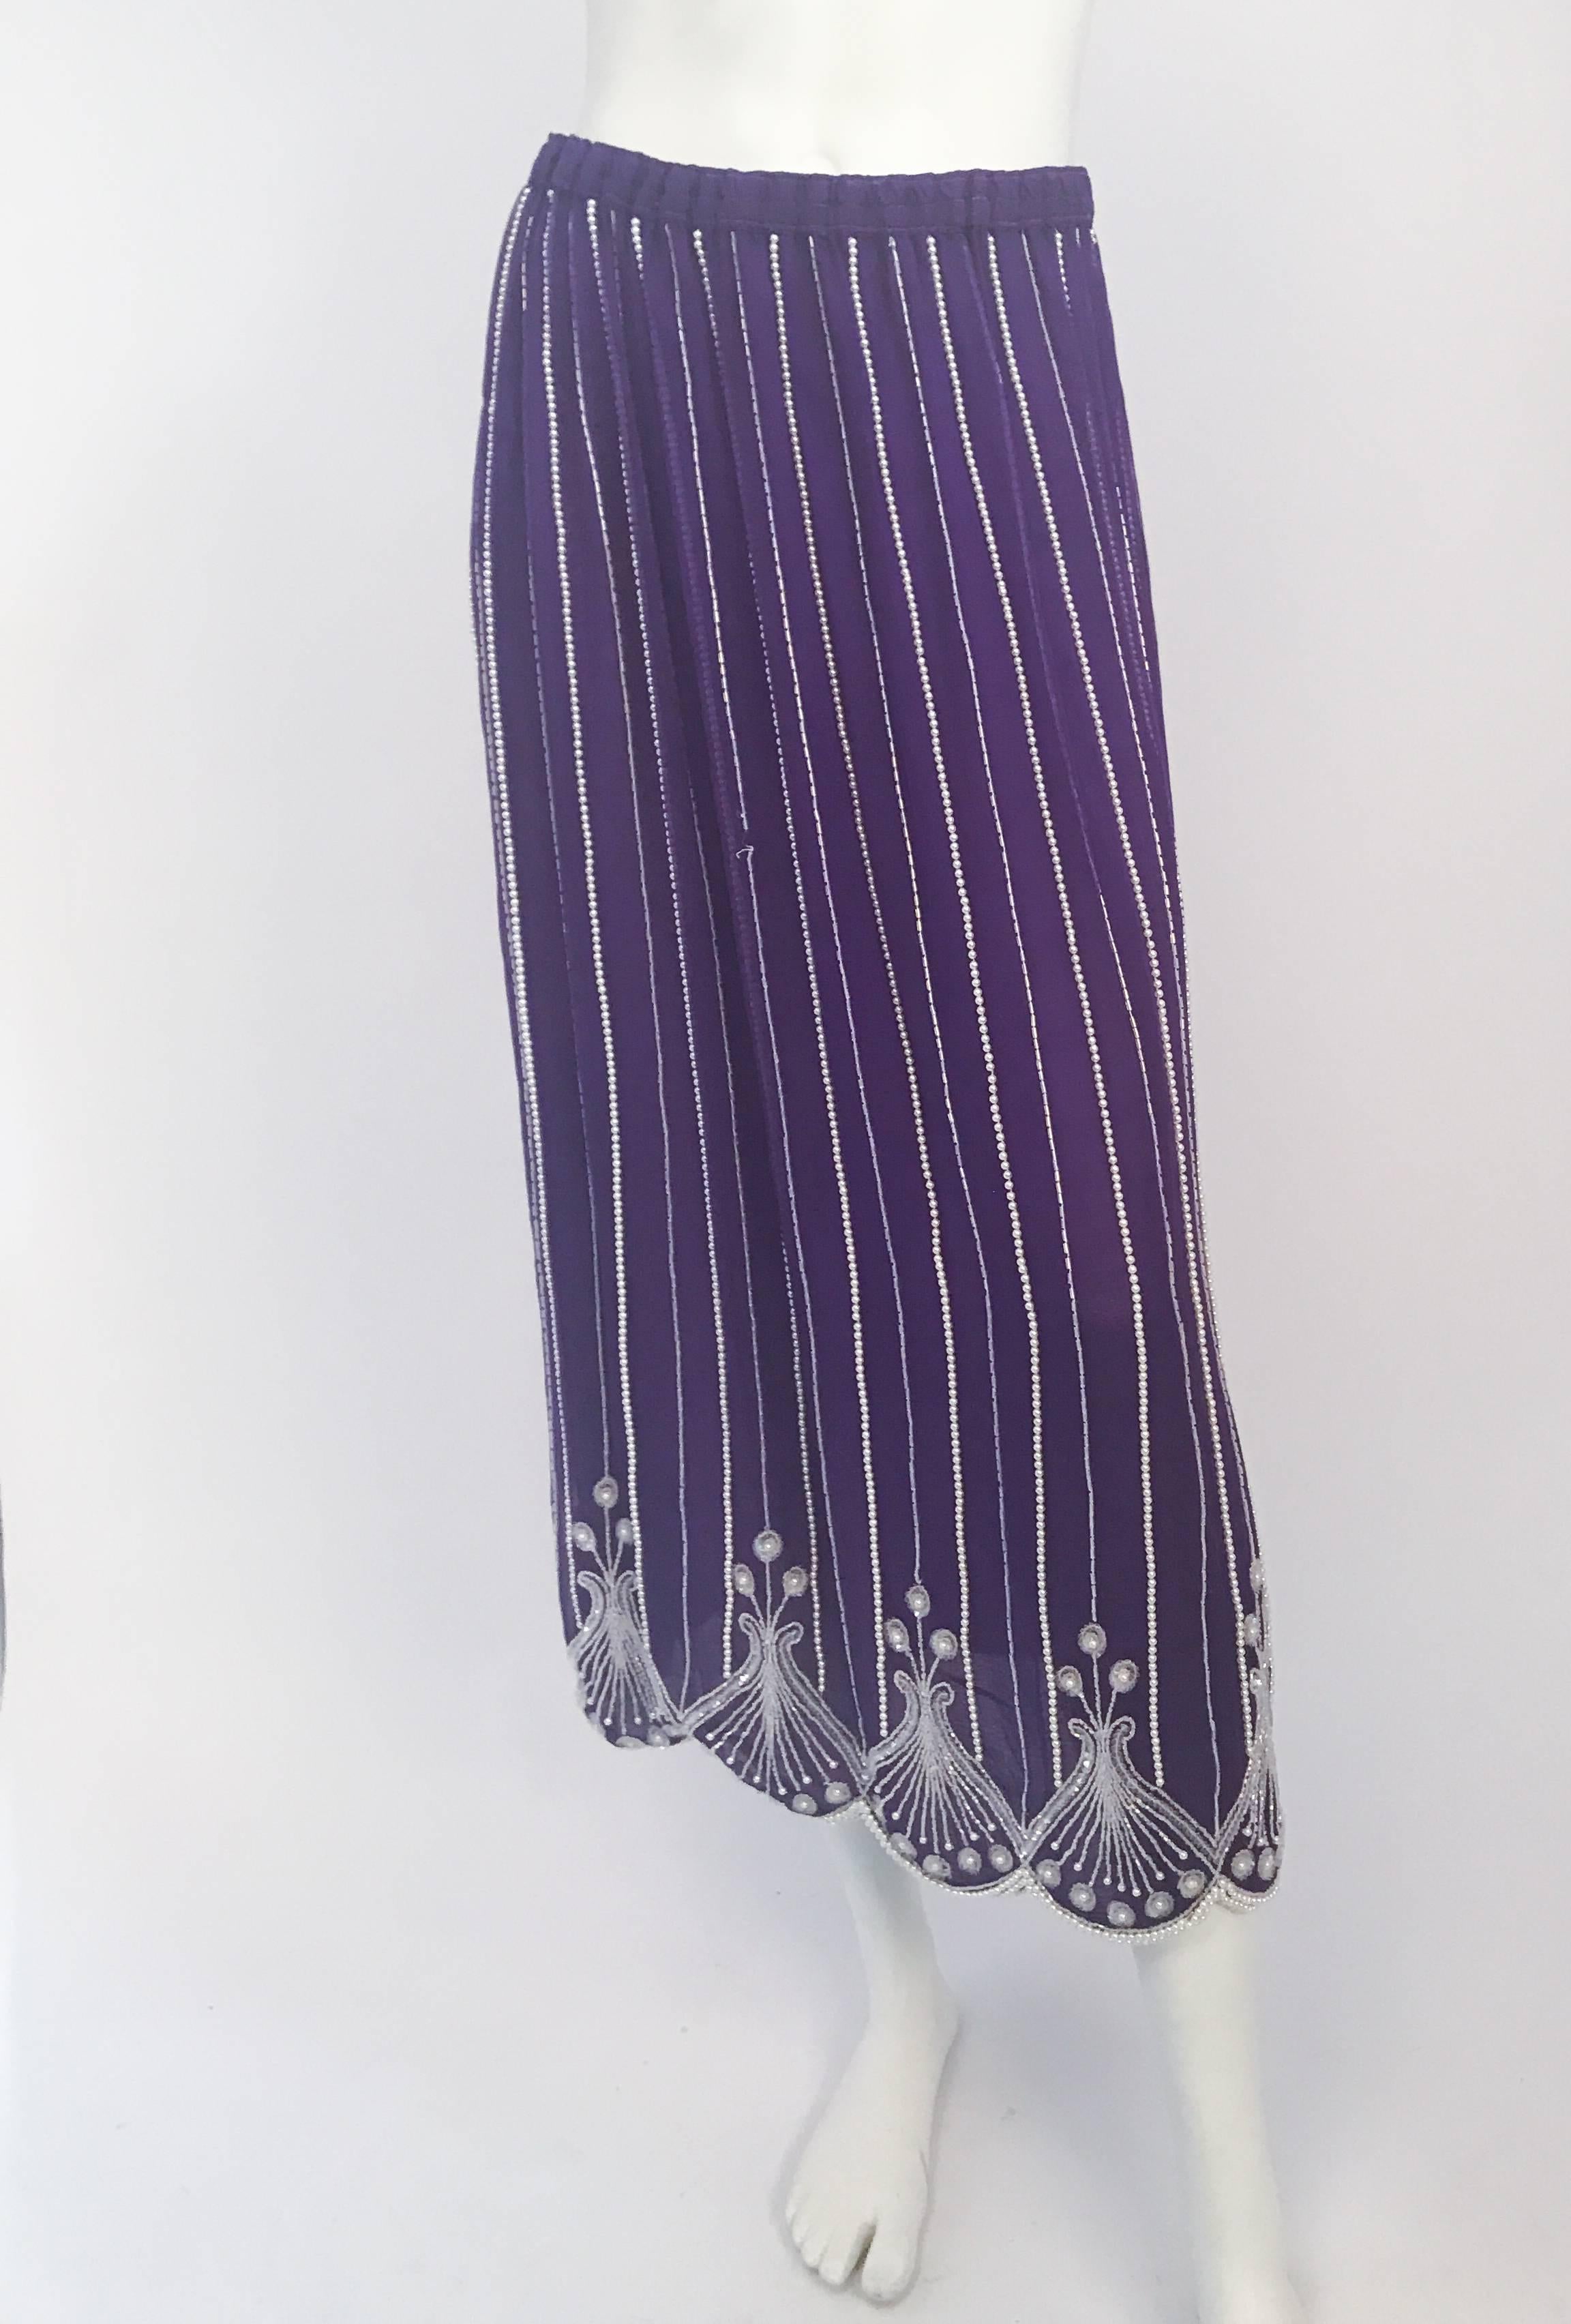 Women's Neiman Marcus Purple Beaded Ensemble Skirt Set, 1980s  For Sale